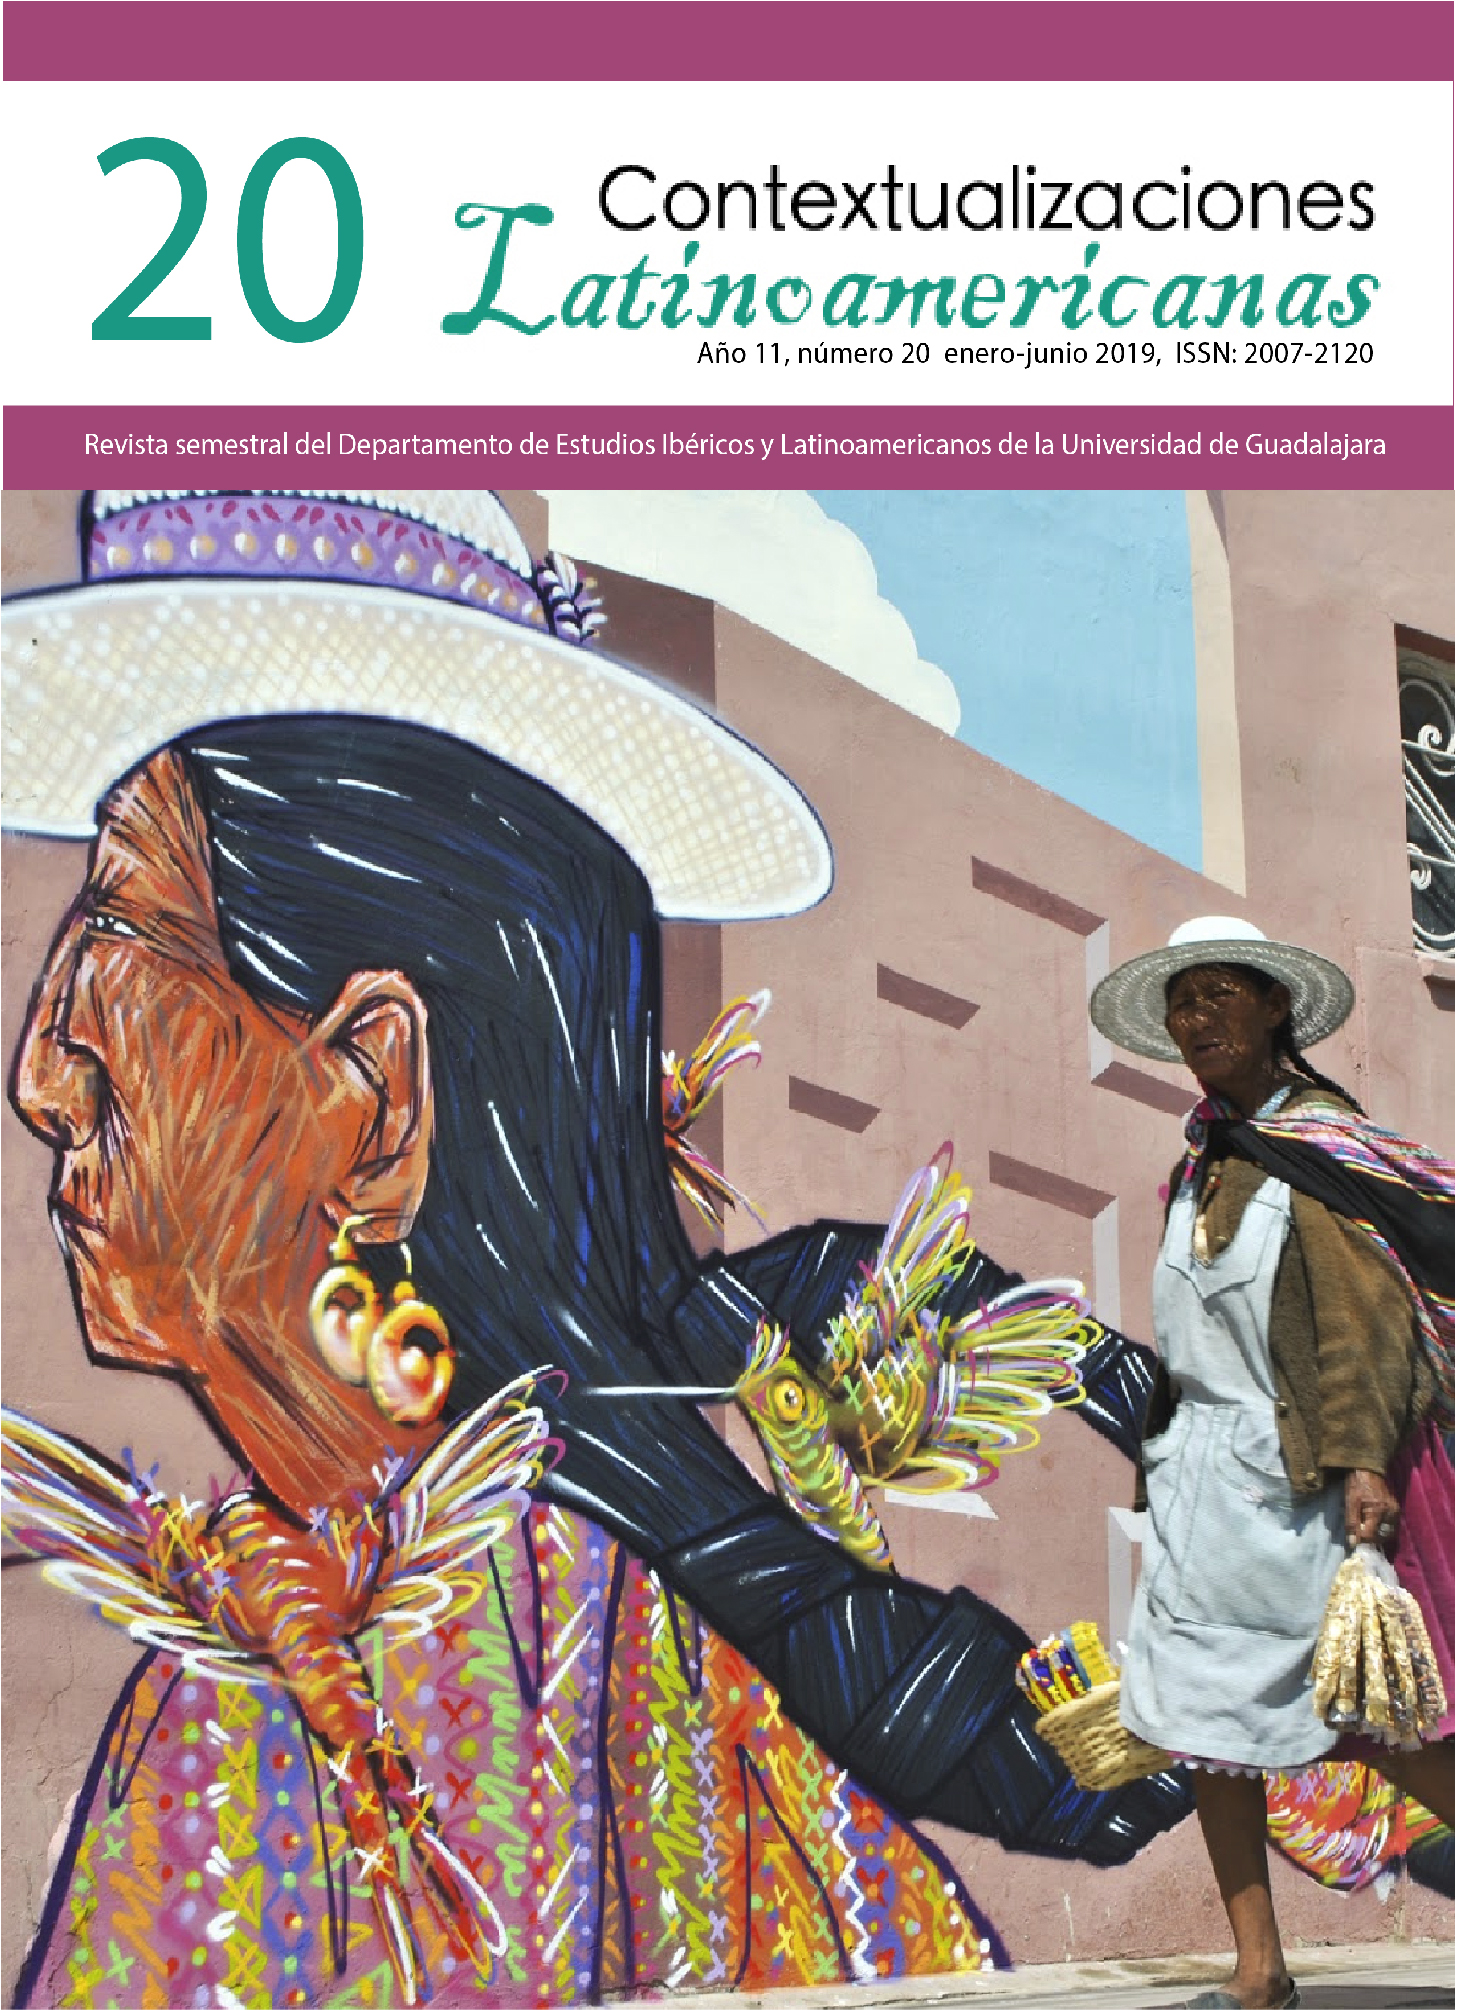 					Ver Vol. 1 Núm. 20 (12): Contextualizaciones Latinoamericanas Número 20 Enero- Junio 2019
				